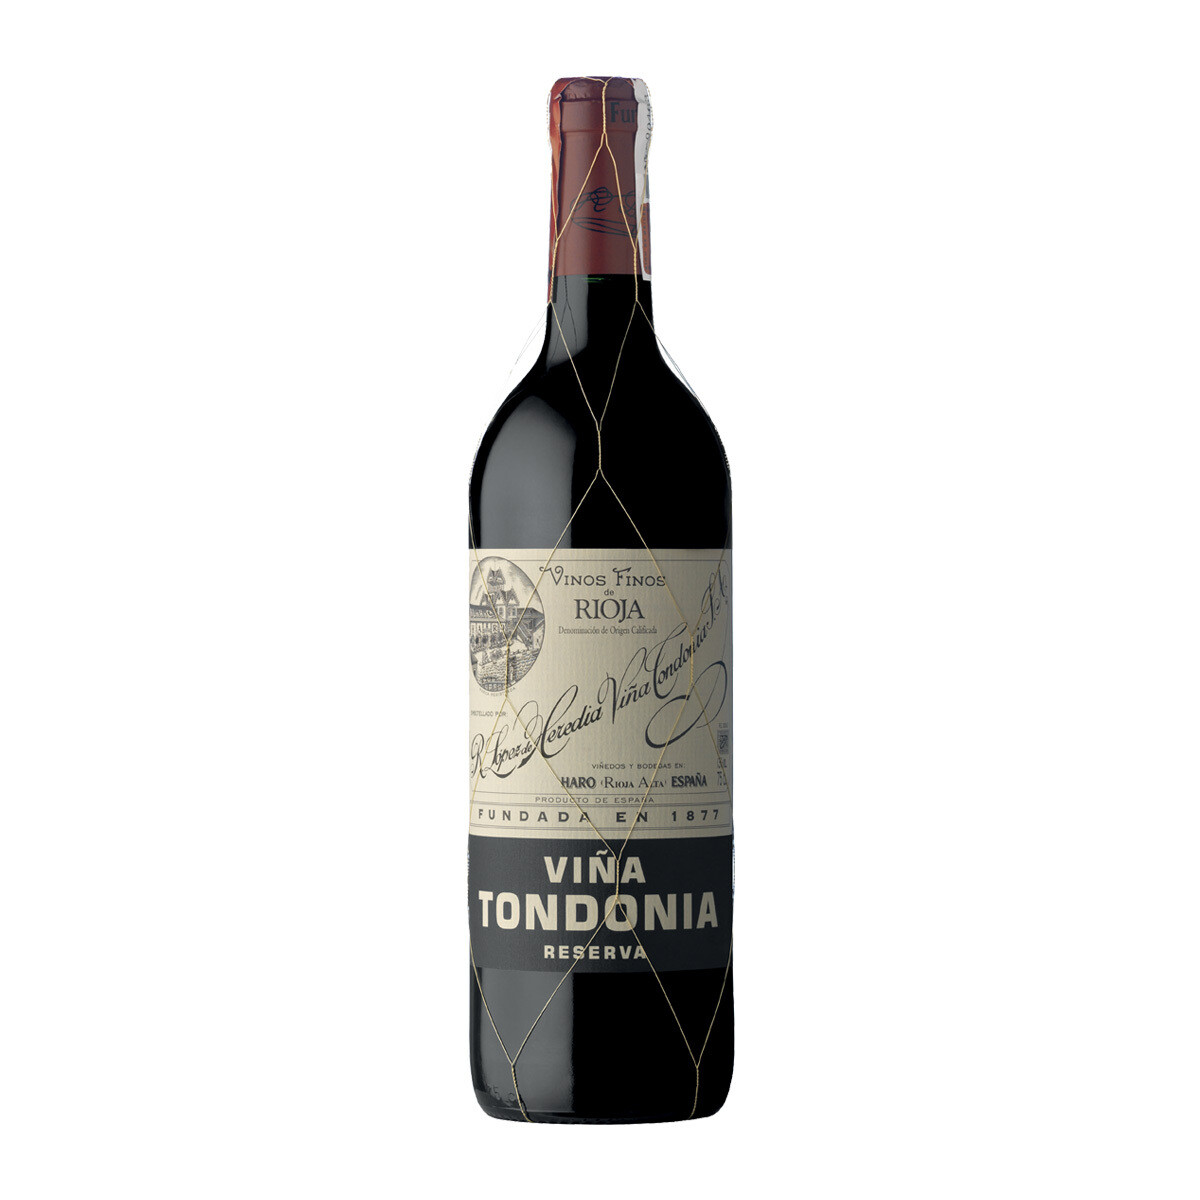 Vina Tondonia Tinto Reserva 2010  375ml (Half Bottle)